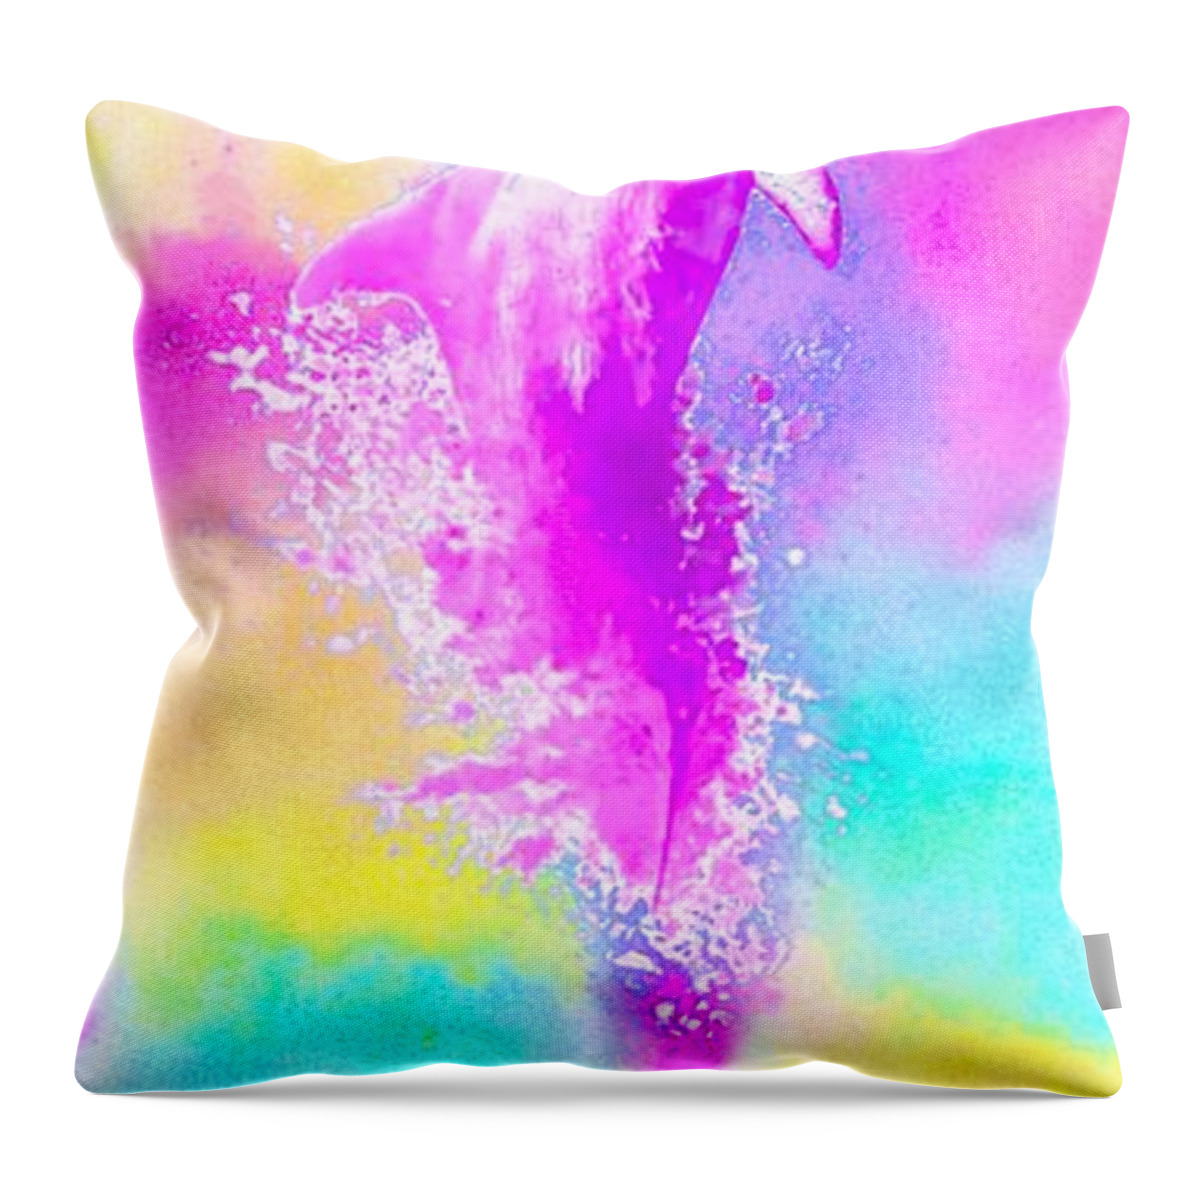 Sky Throw Pillow featuring the digital art Ocean SkY by Auranatura Art